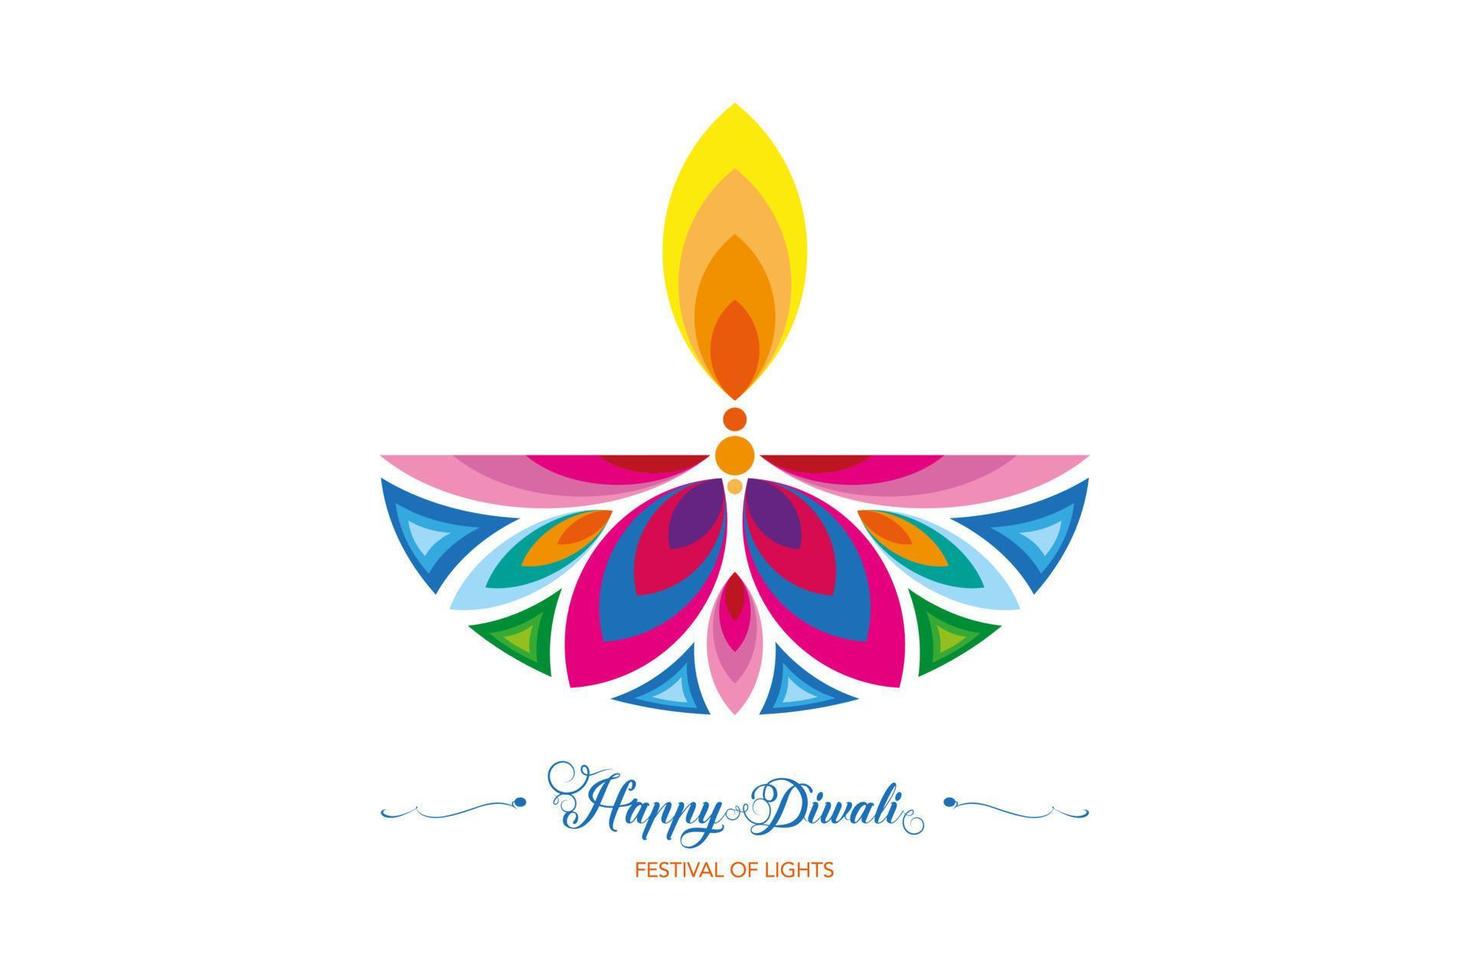 feliz festival de diwali de luzes modelo de logotipo colorido de celebração da índia. design de banner gráfico da lâmpada de óleo diya flor indiana, design moderno em cores vibrantes. vetor isolado no fundo branco